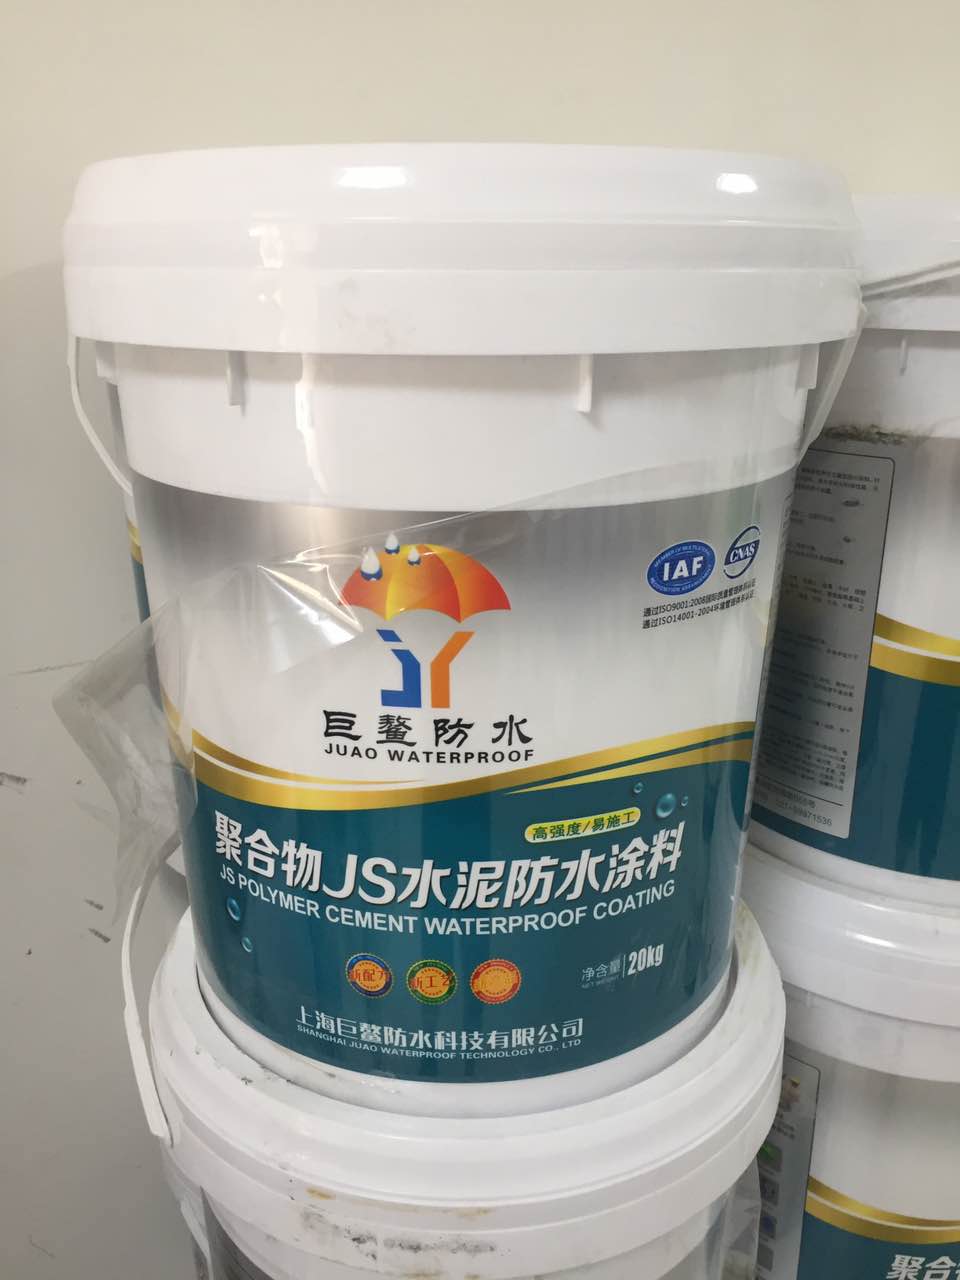 聚合物JS柔韧性防水涂料20公斤厂家直销 源头产品 质量保证 价格优越